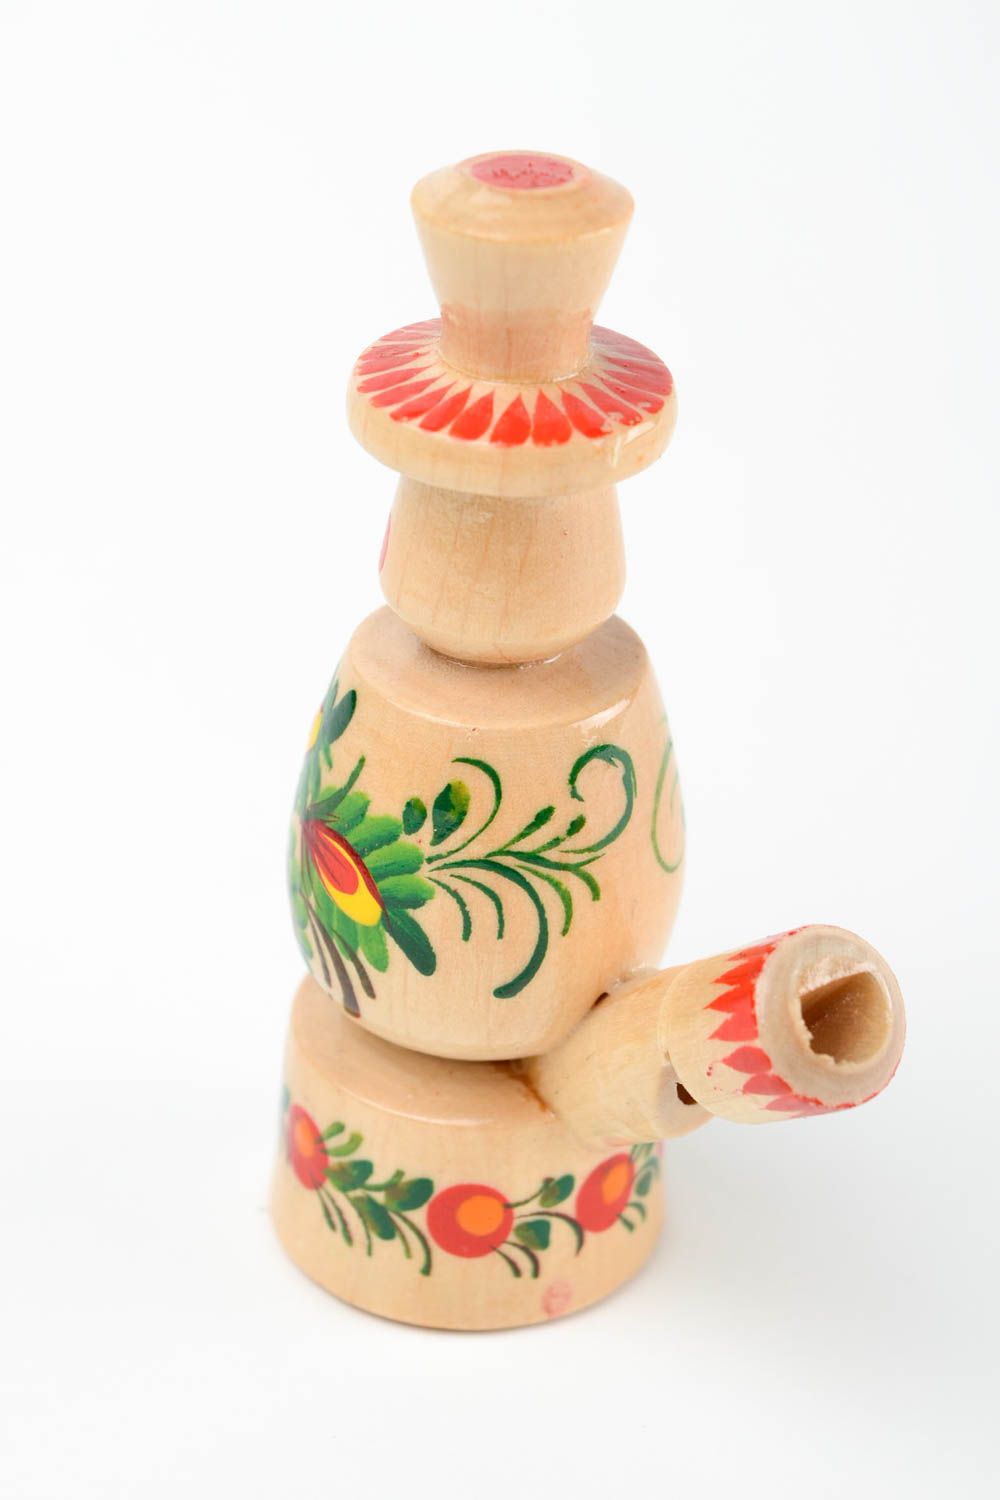 Сувенир из дерева ручной работы игрушка свистулька подарок ребенку расписной фото 5